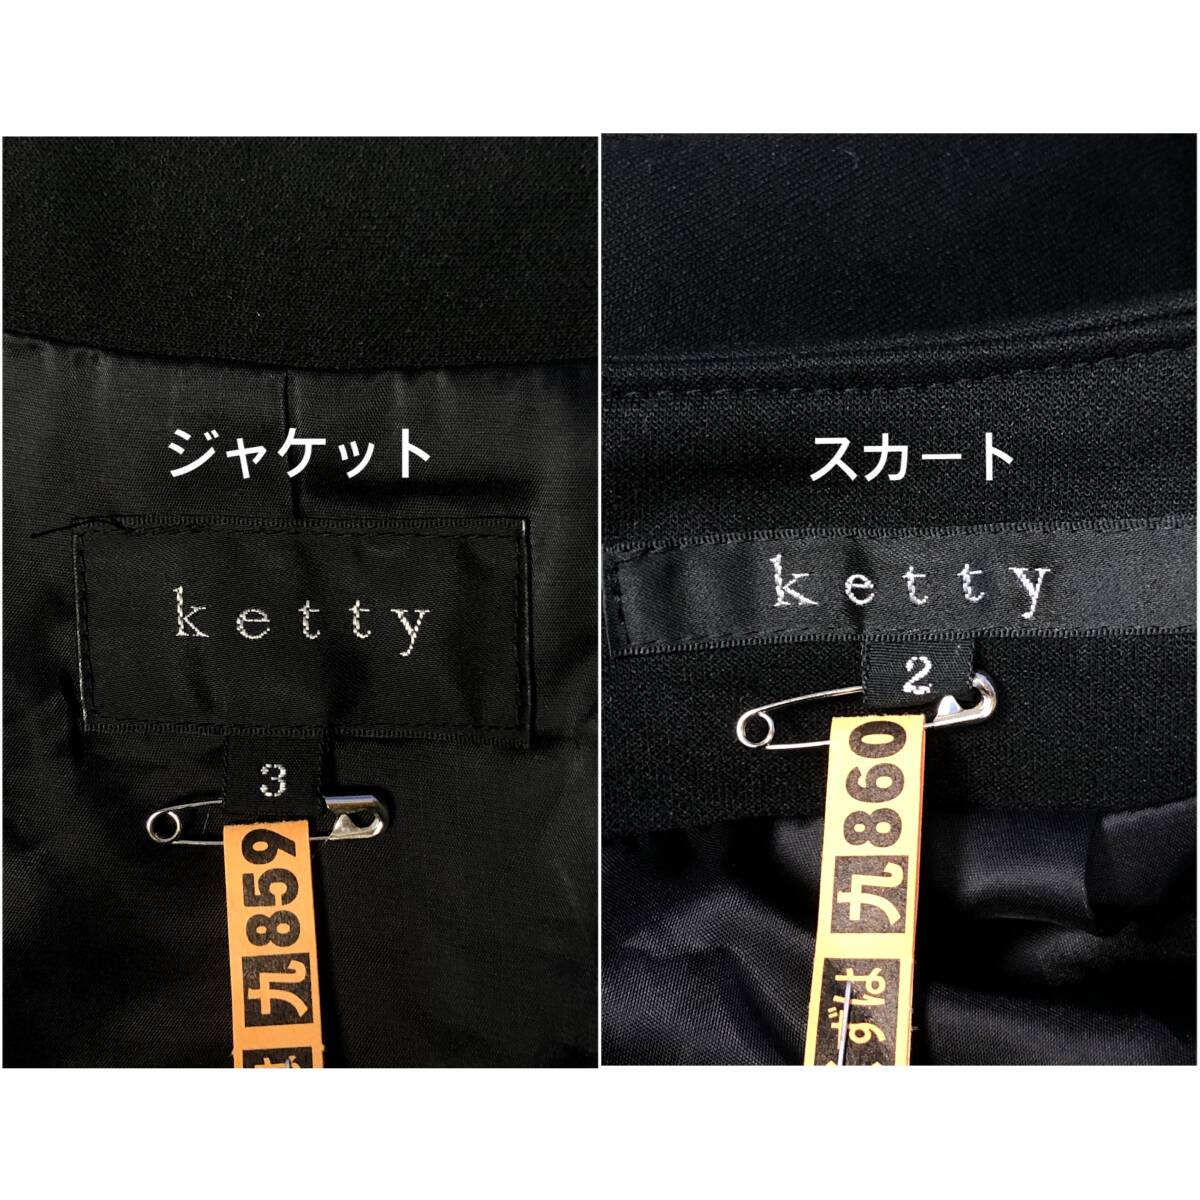 ★Ketty★ジャケット3(L)/スカート2(M) ケティ レディース 黒色 ブラック セットアップ スカートスーツ ひざ丈 １つボタン 総裏 J147